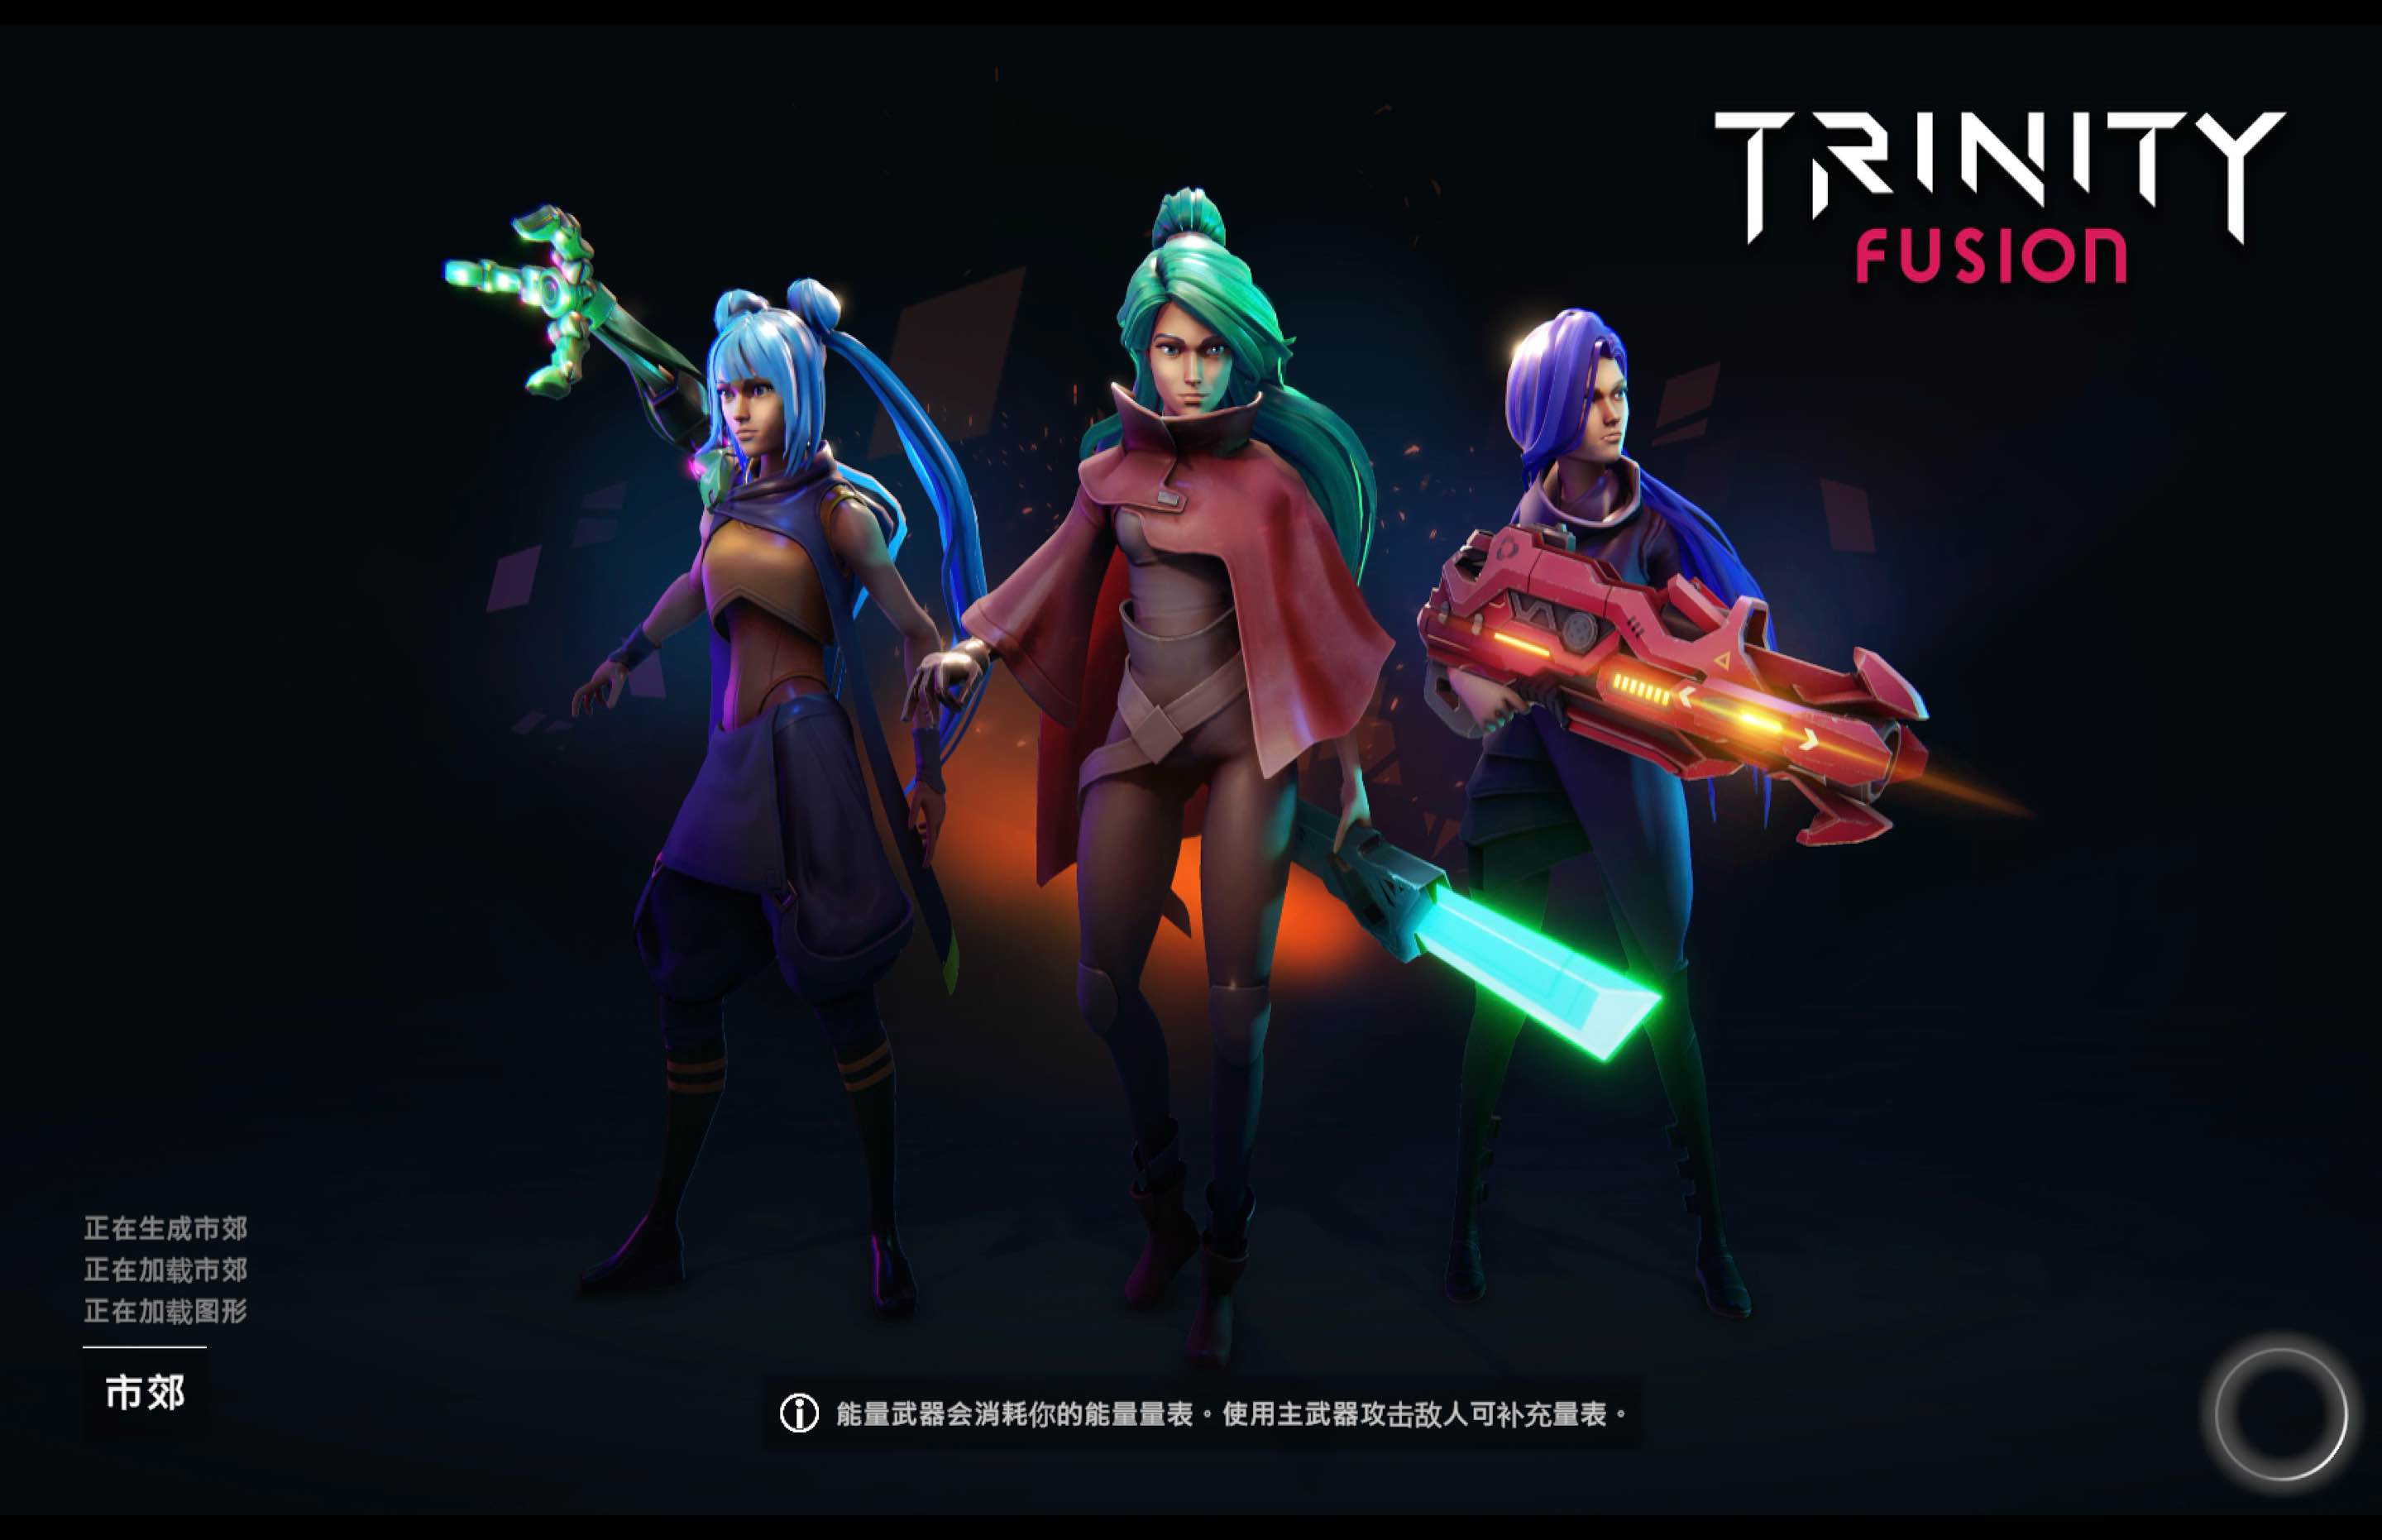 三体融合 for Mac Trinity Fusion v1.0 中文移植版 苹果电脑